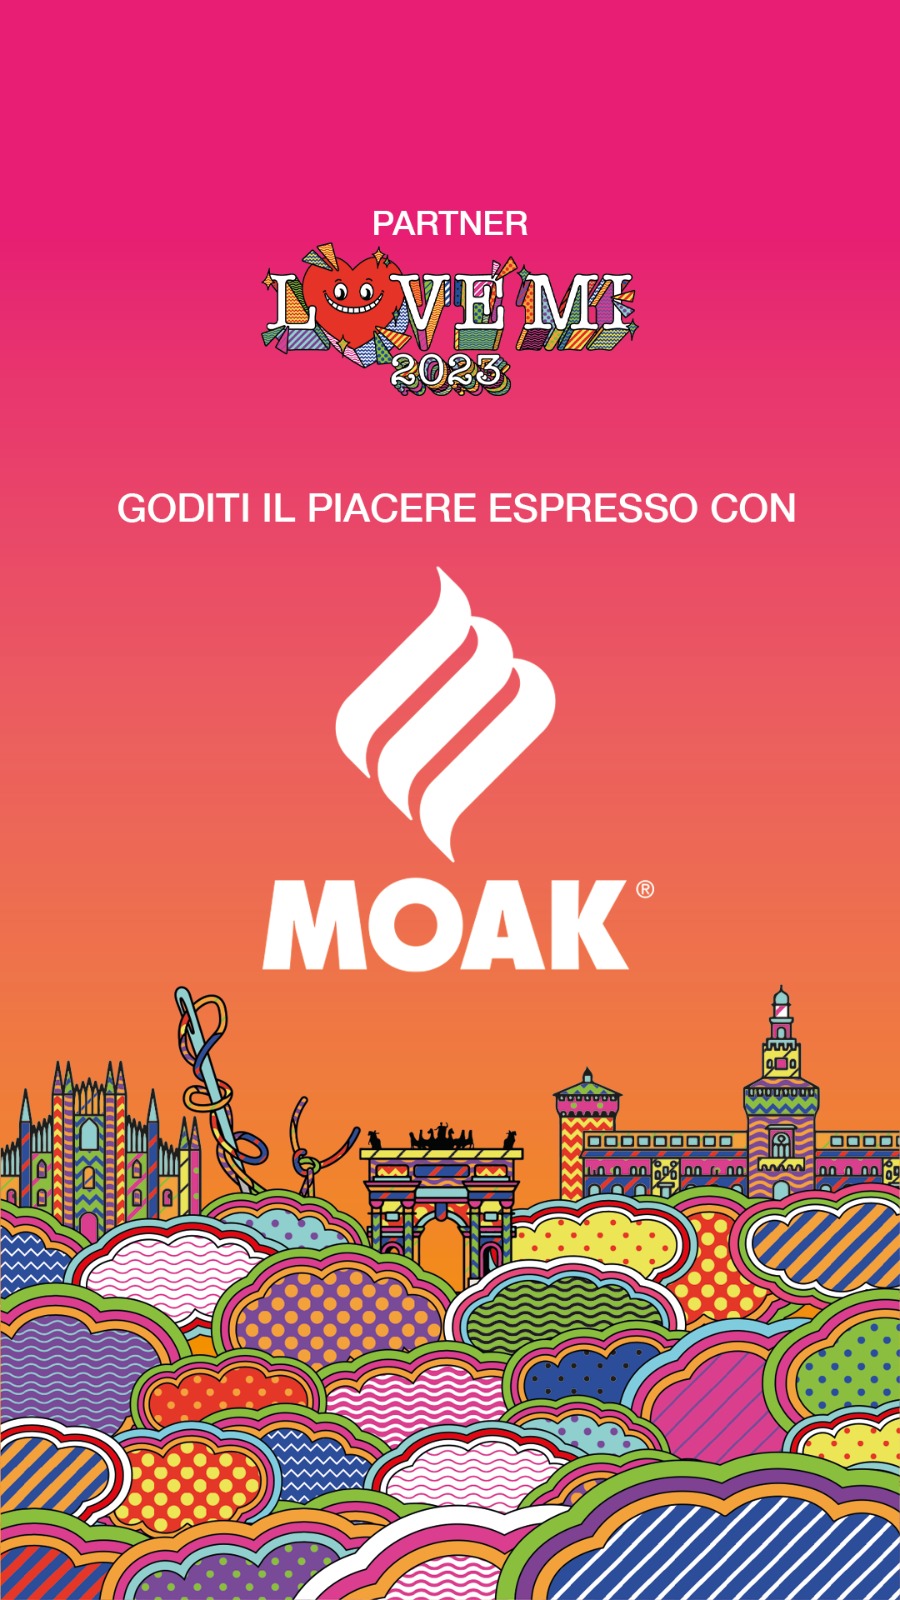 Caffè Moak "Coffee Partner" del concerto LOVE MI in Piazza Duomo a Milano